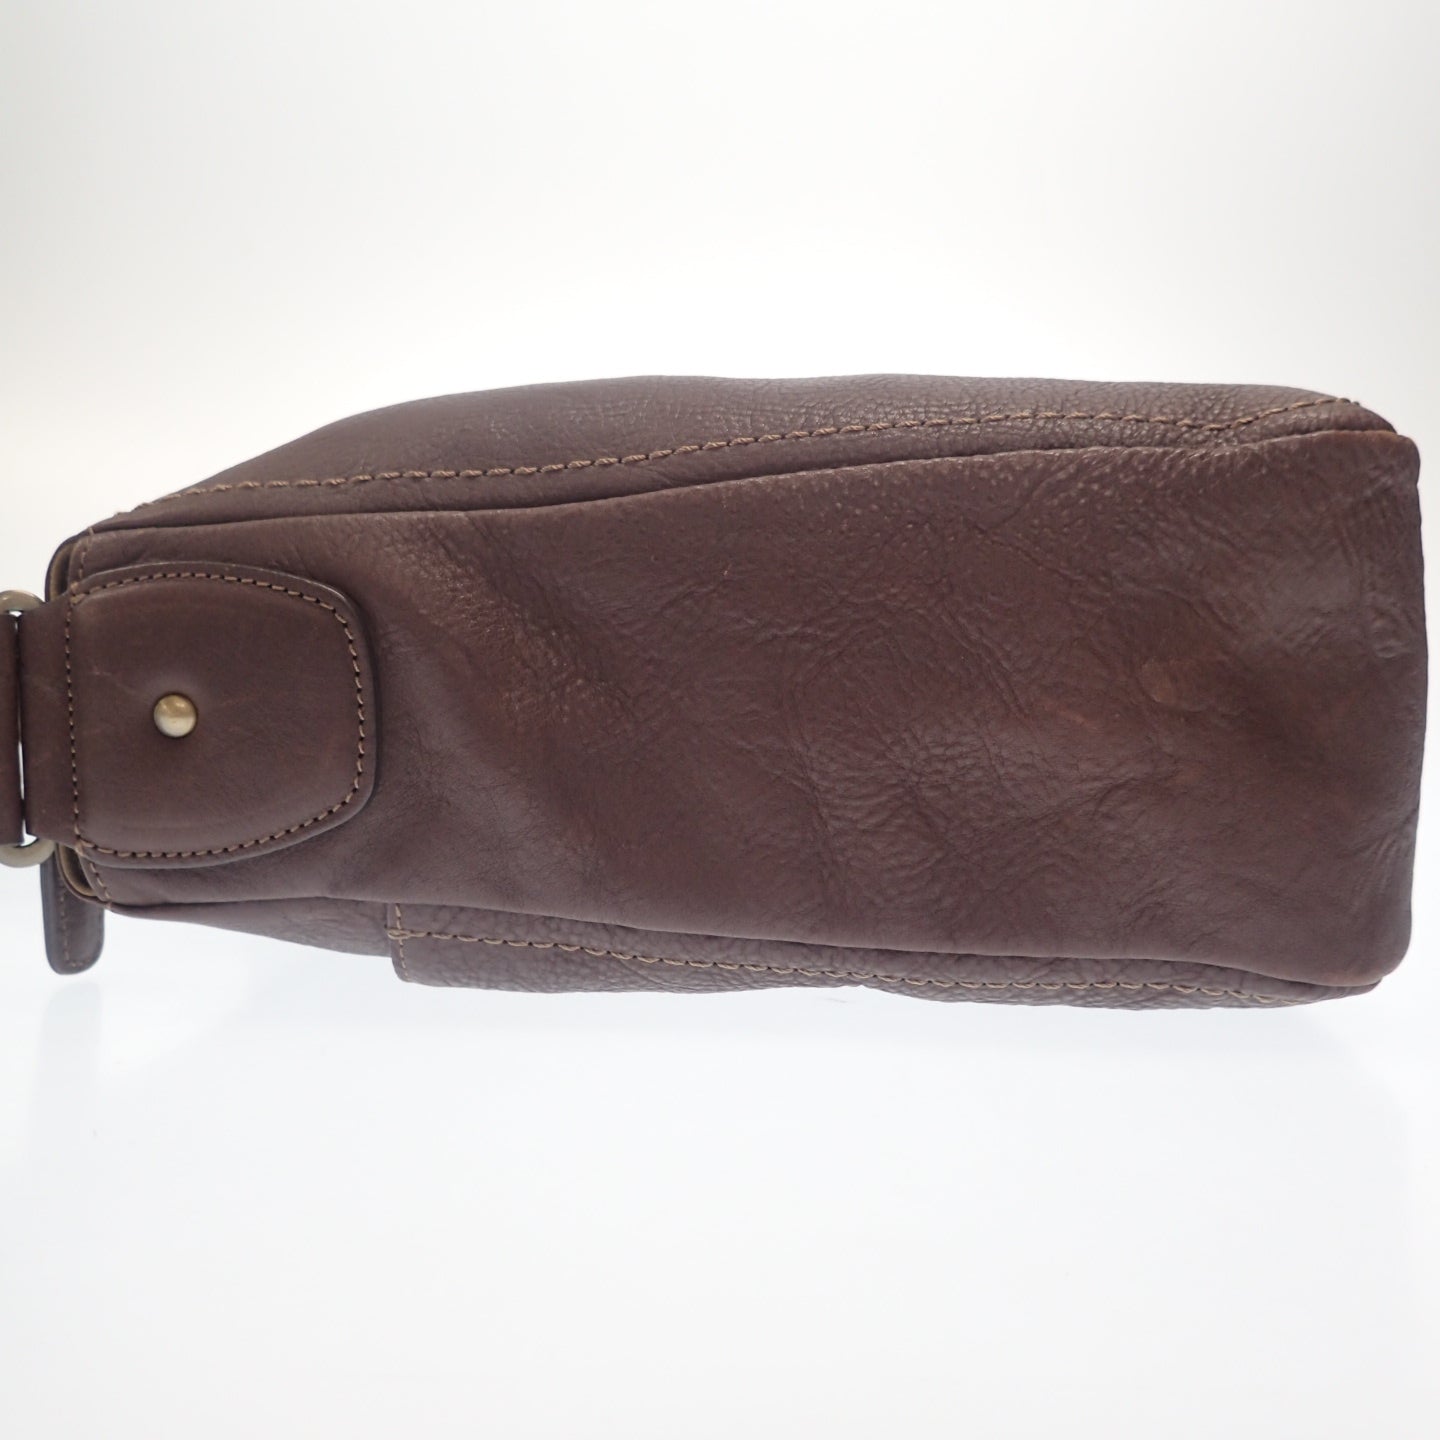 Tsuchiya bag one shoulder bag grained leather brown [AFE8] [Used] 